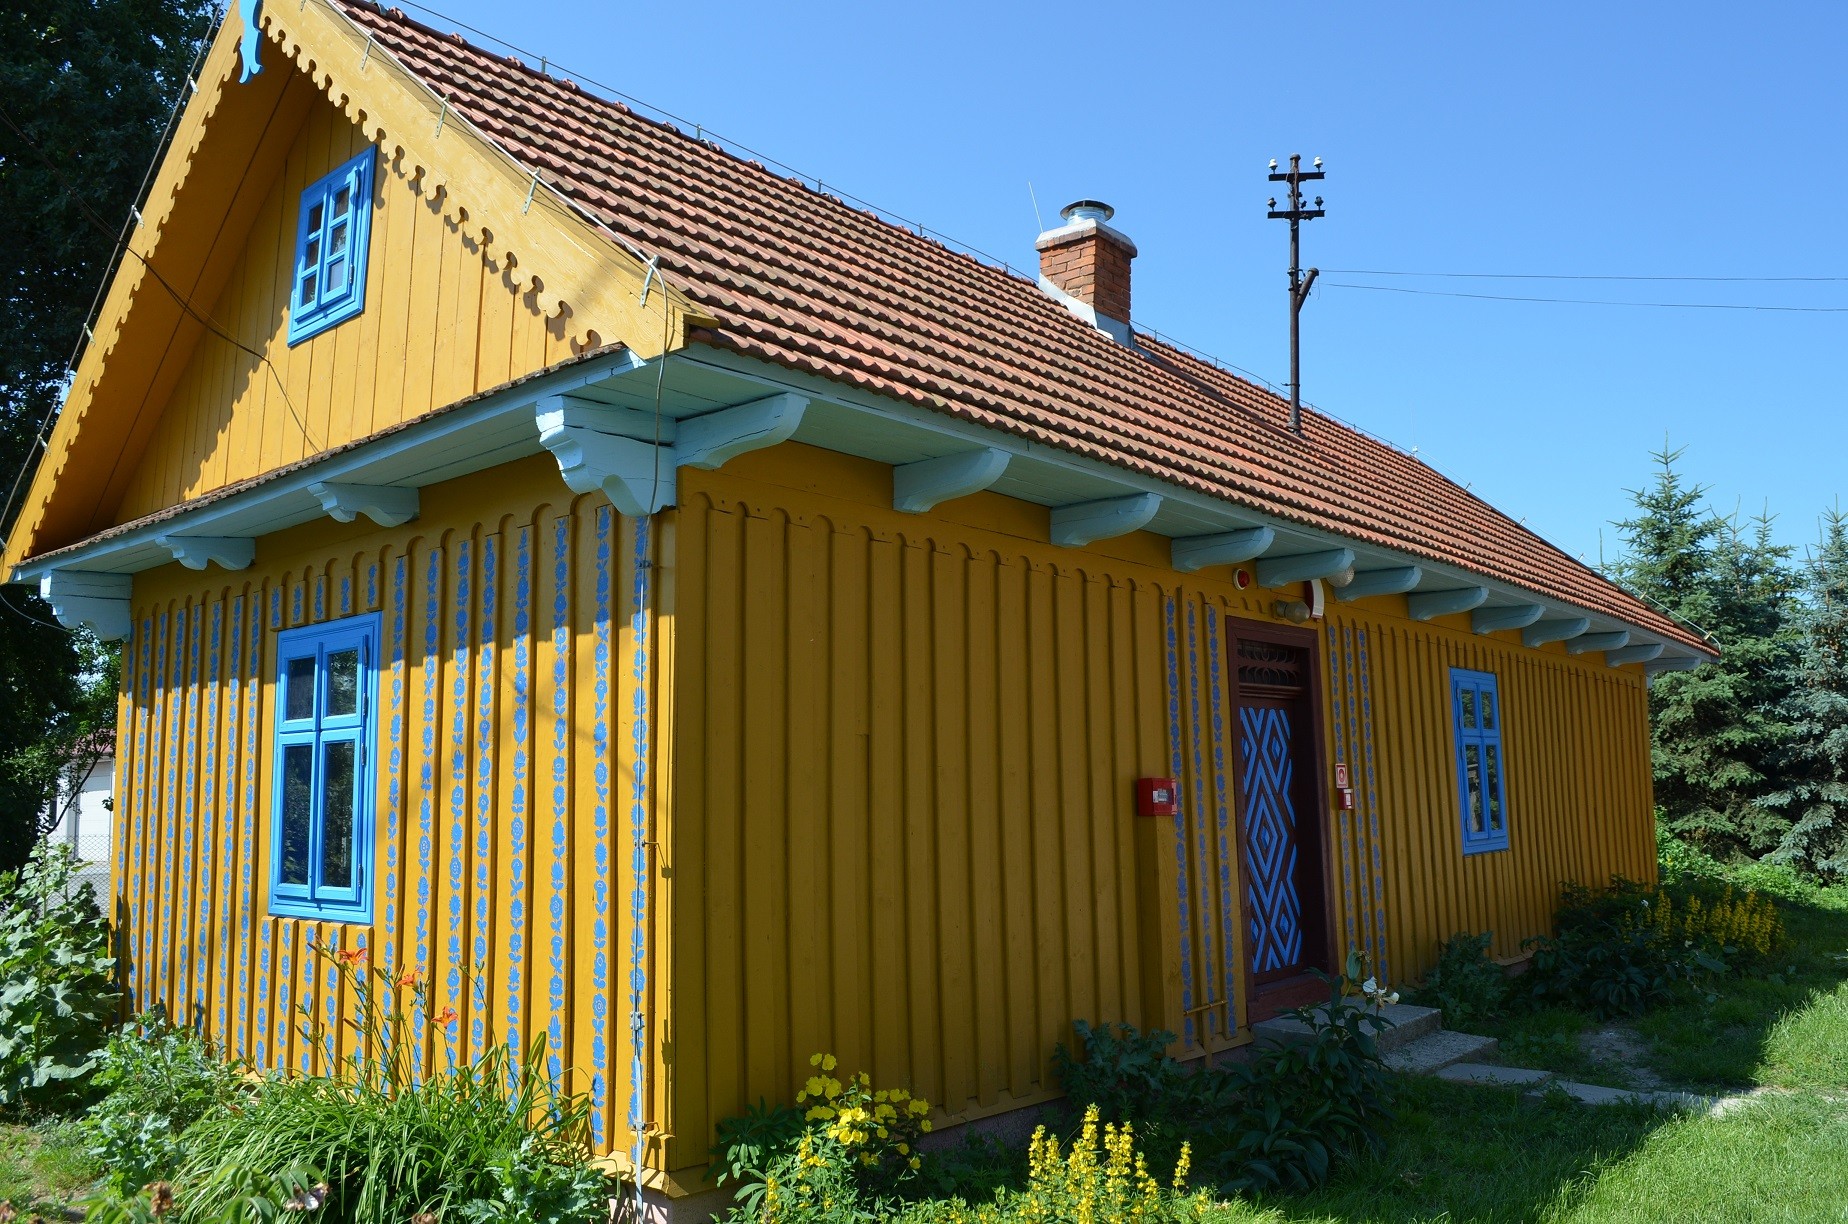 Drewniana chałupa pomalowana na żółto, z niebieskimi ramami okien.